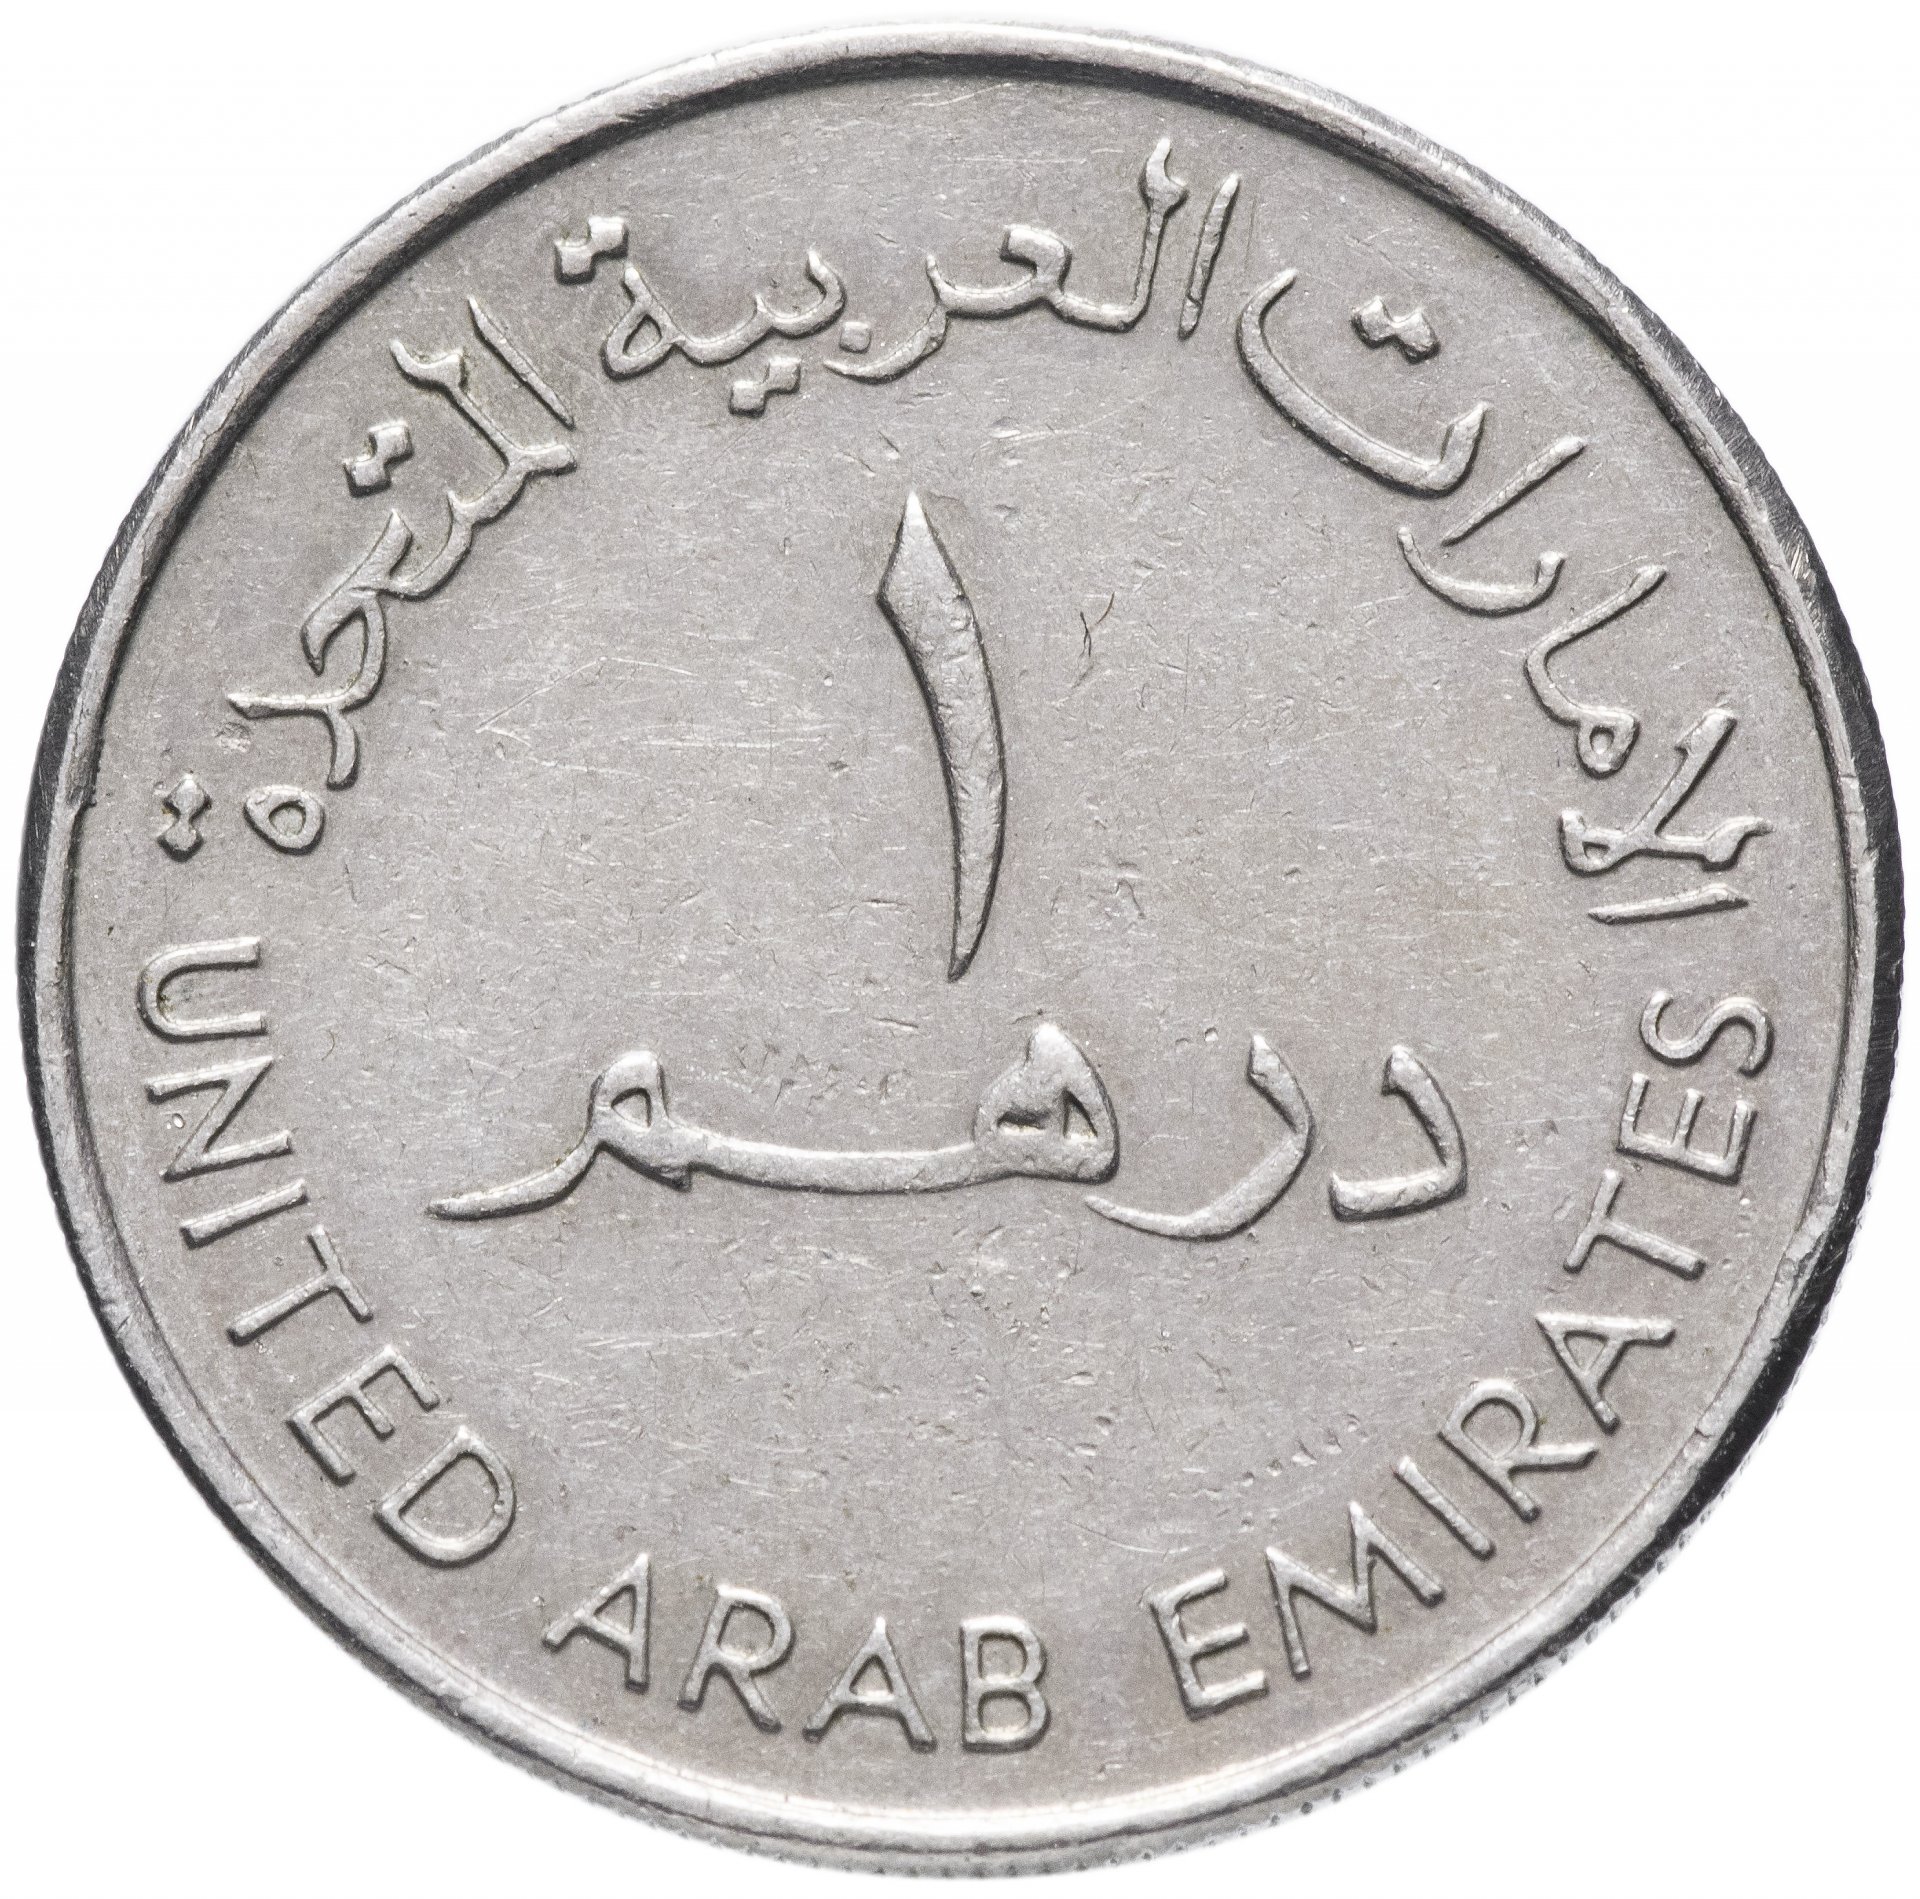 550 дирхам. Монета 1 дирхам (ОАЭ) арабские эмираты.. Монеты арабских Эмиратов. Арабская монета 1/2. 1 Дирхам 1995-2007.